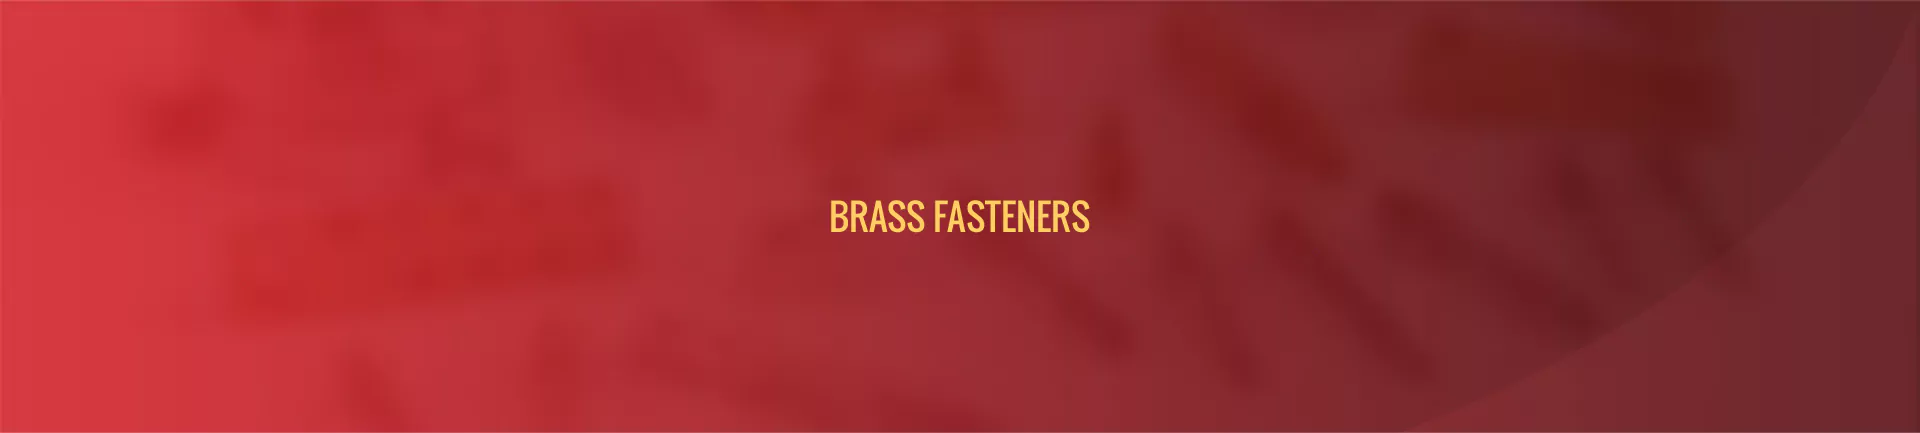 brass-fasteners-banner